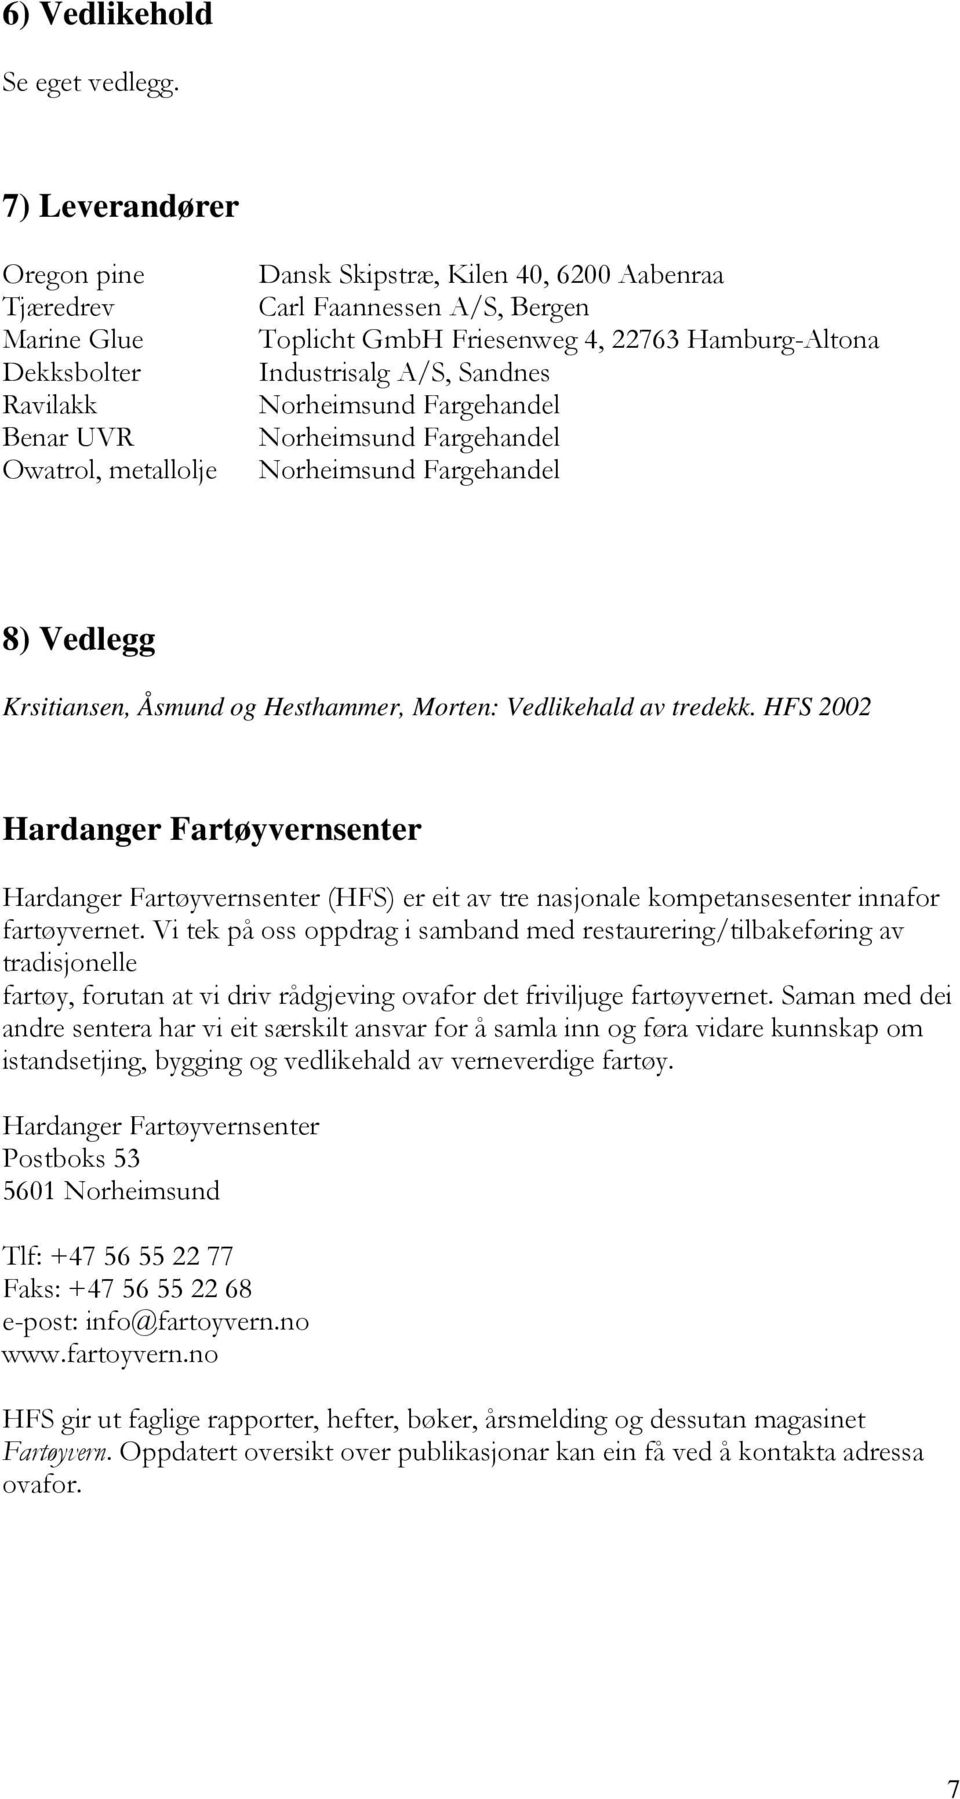 22763 Hamburg-Altona Industrisalg A/S, Sandnes Norheimsund Fargehandel Norheimsund Fargehandel Norheimsund Fargehandel 8) Vedlegg Krsitiansen, Åsmund og Hesthammer, Morten: Vedlikehald av tredekk.